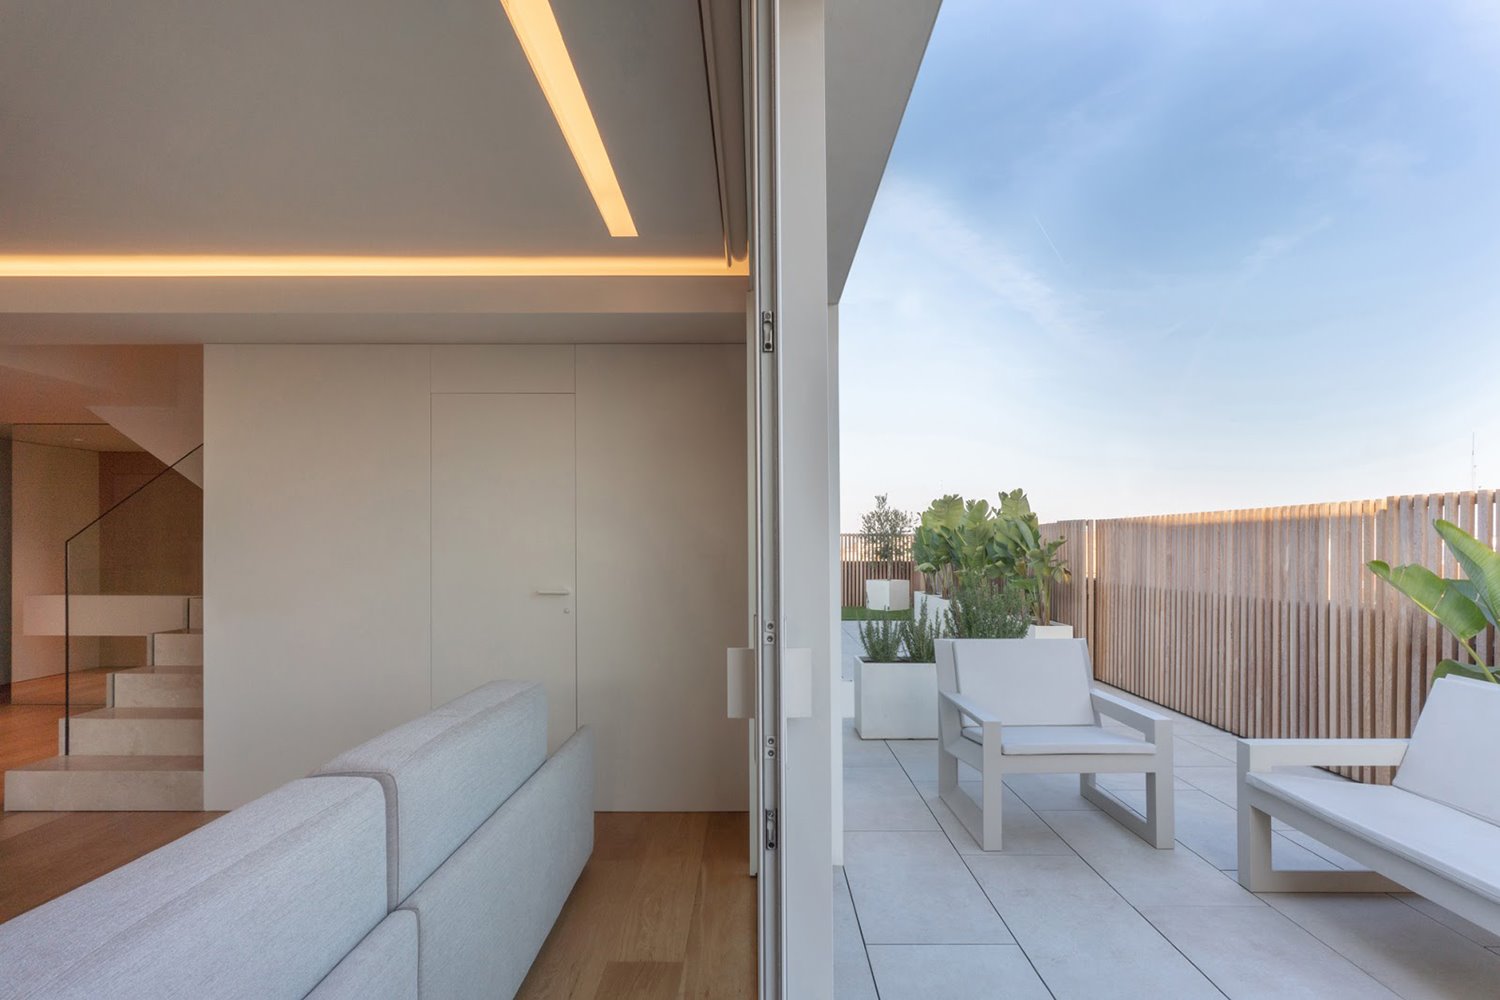 Diseños que aportan privacidad y protegen del sol en la terraza y balcón